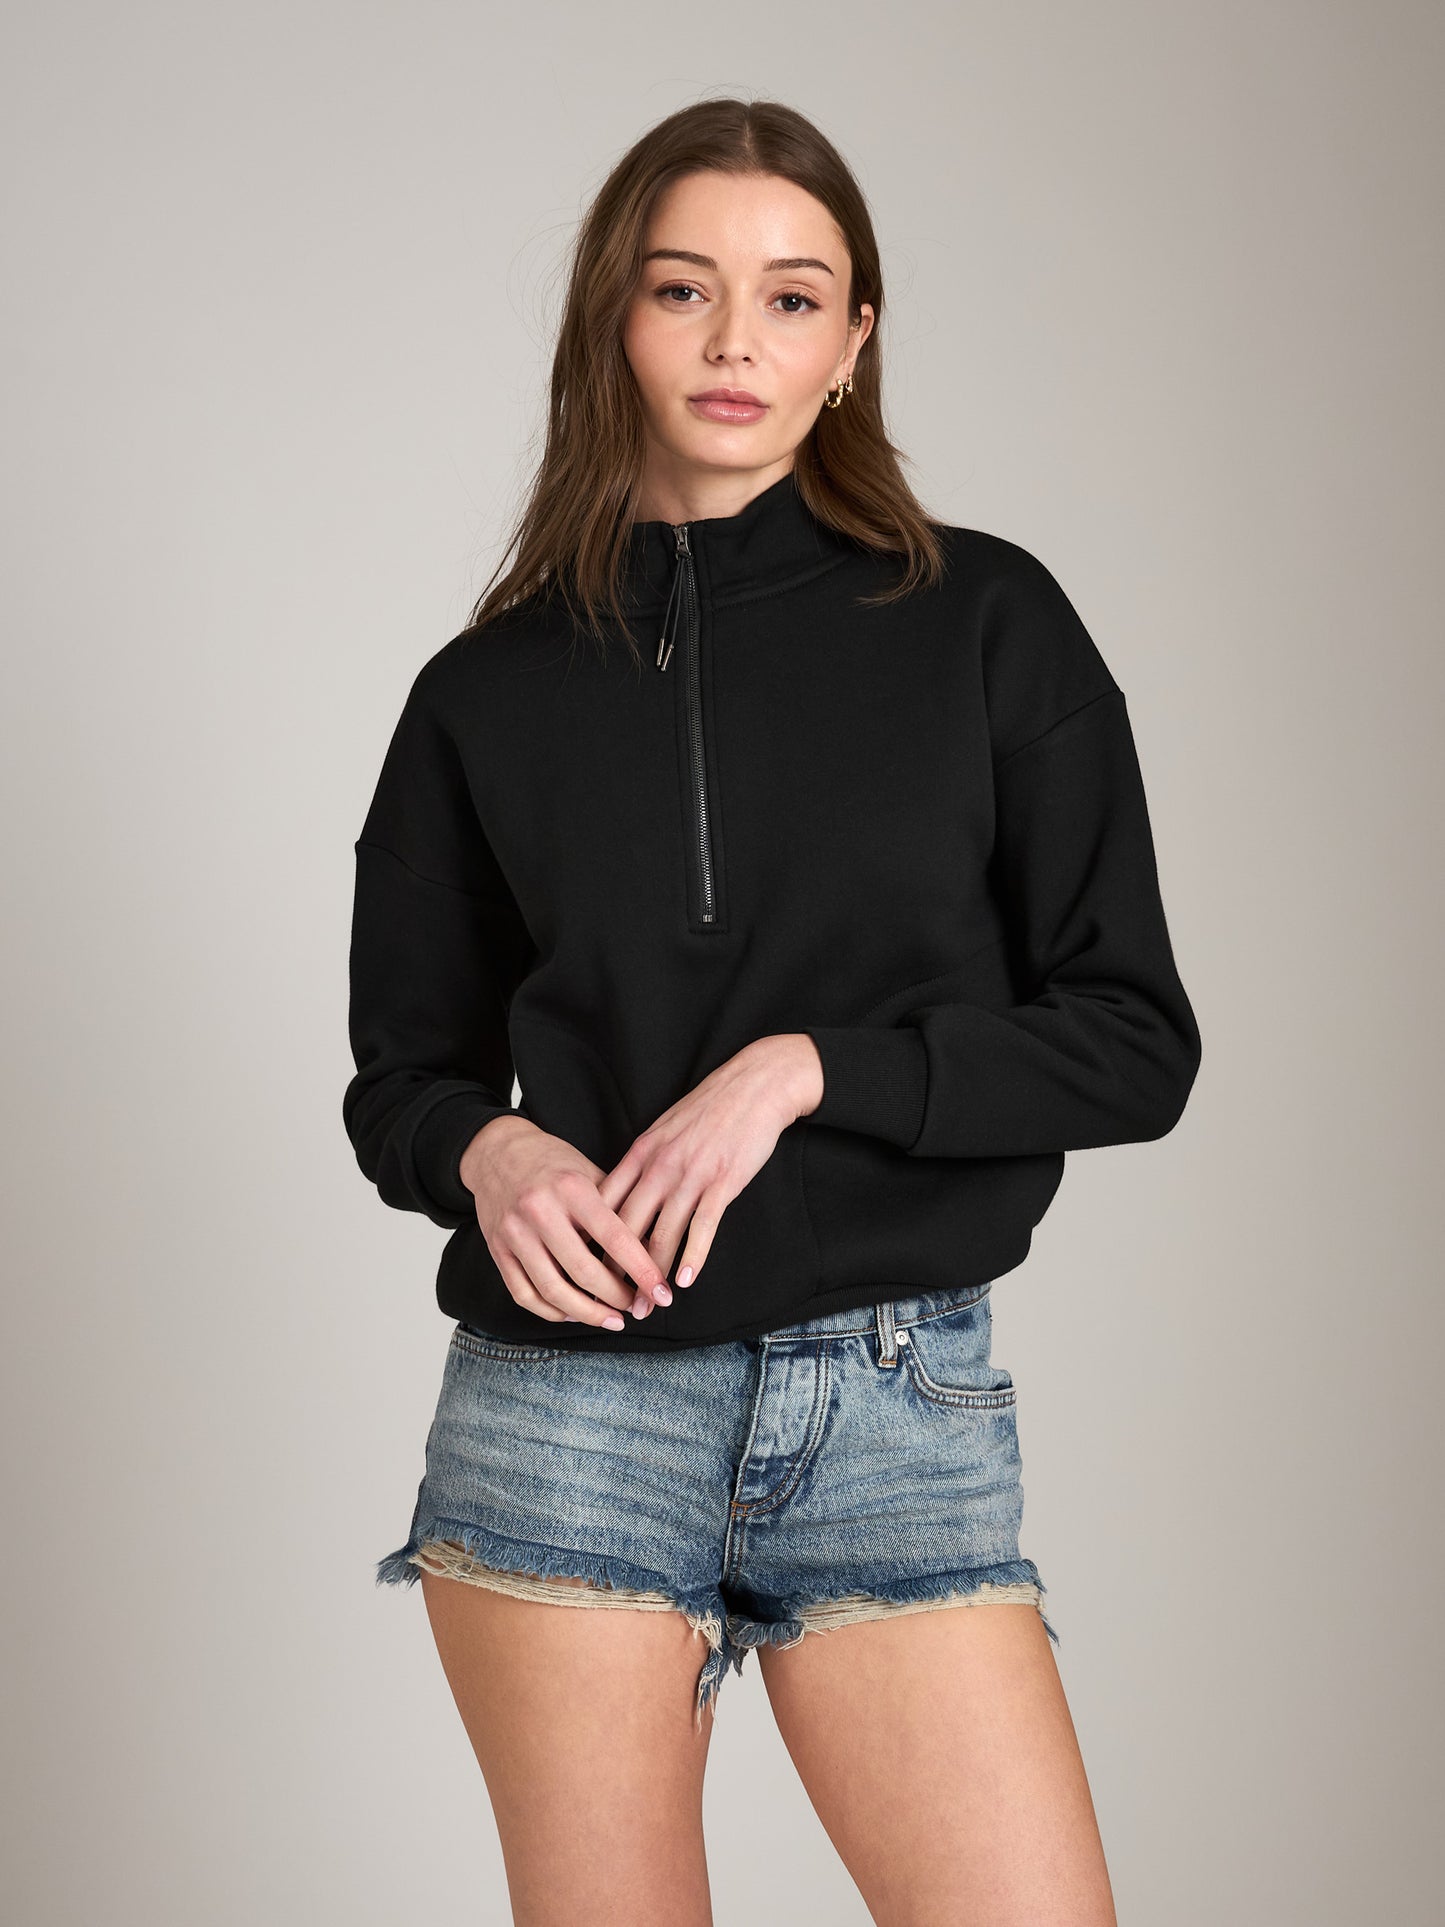 Sweater - PGD - Selene Half Zip Pullover - PLENTY